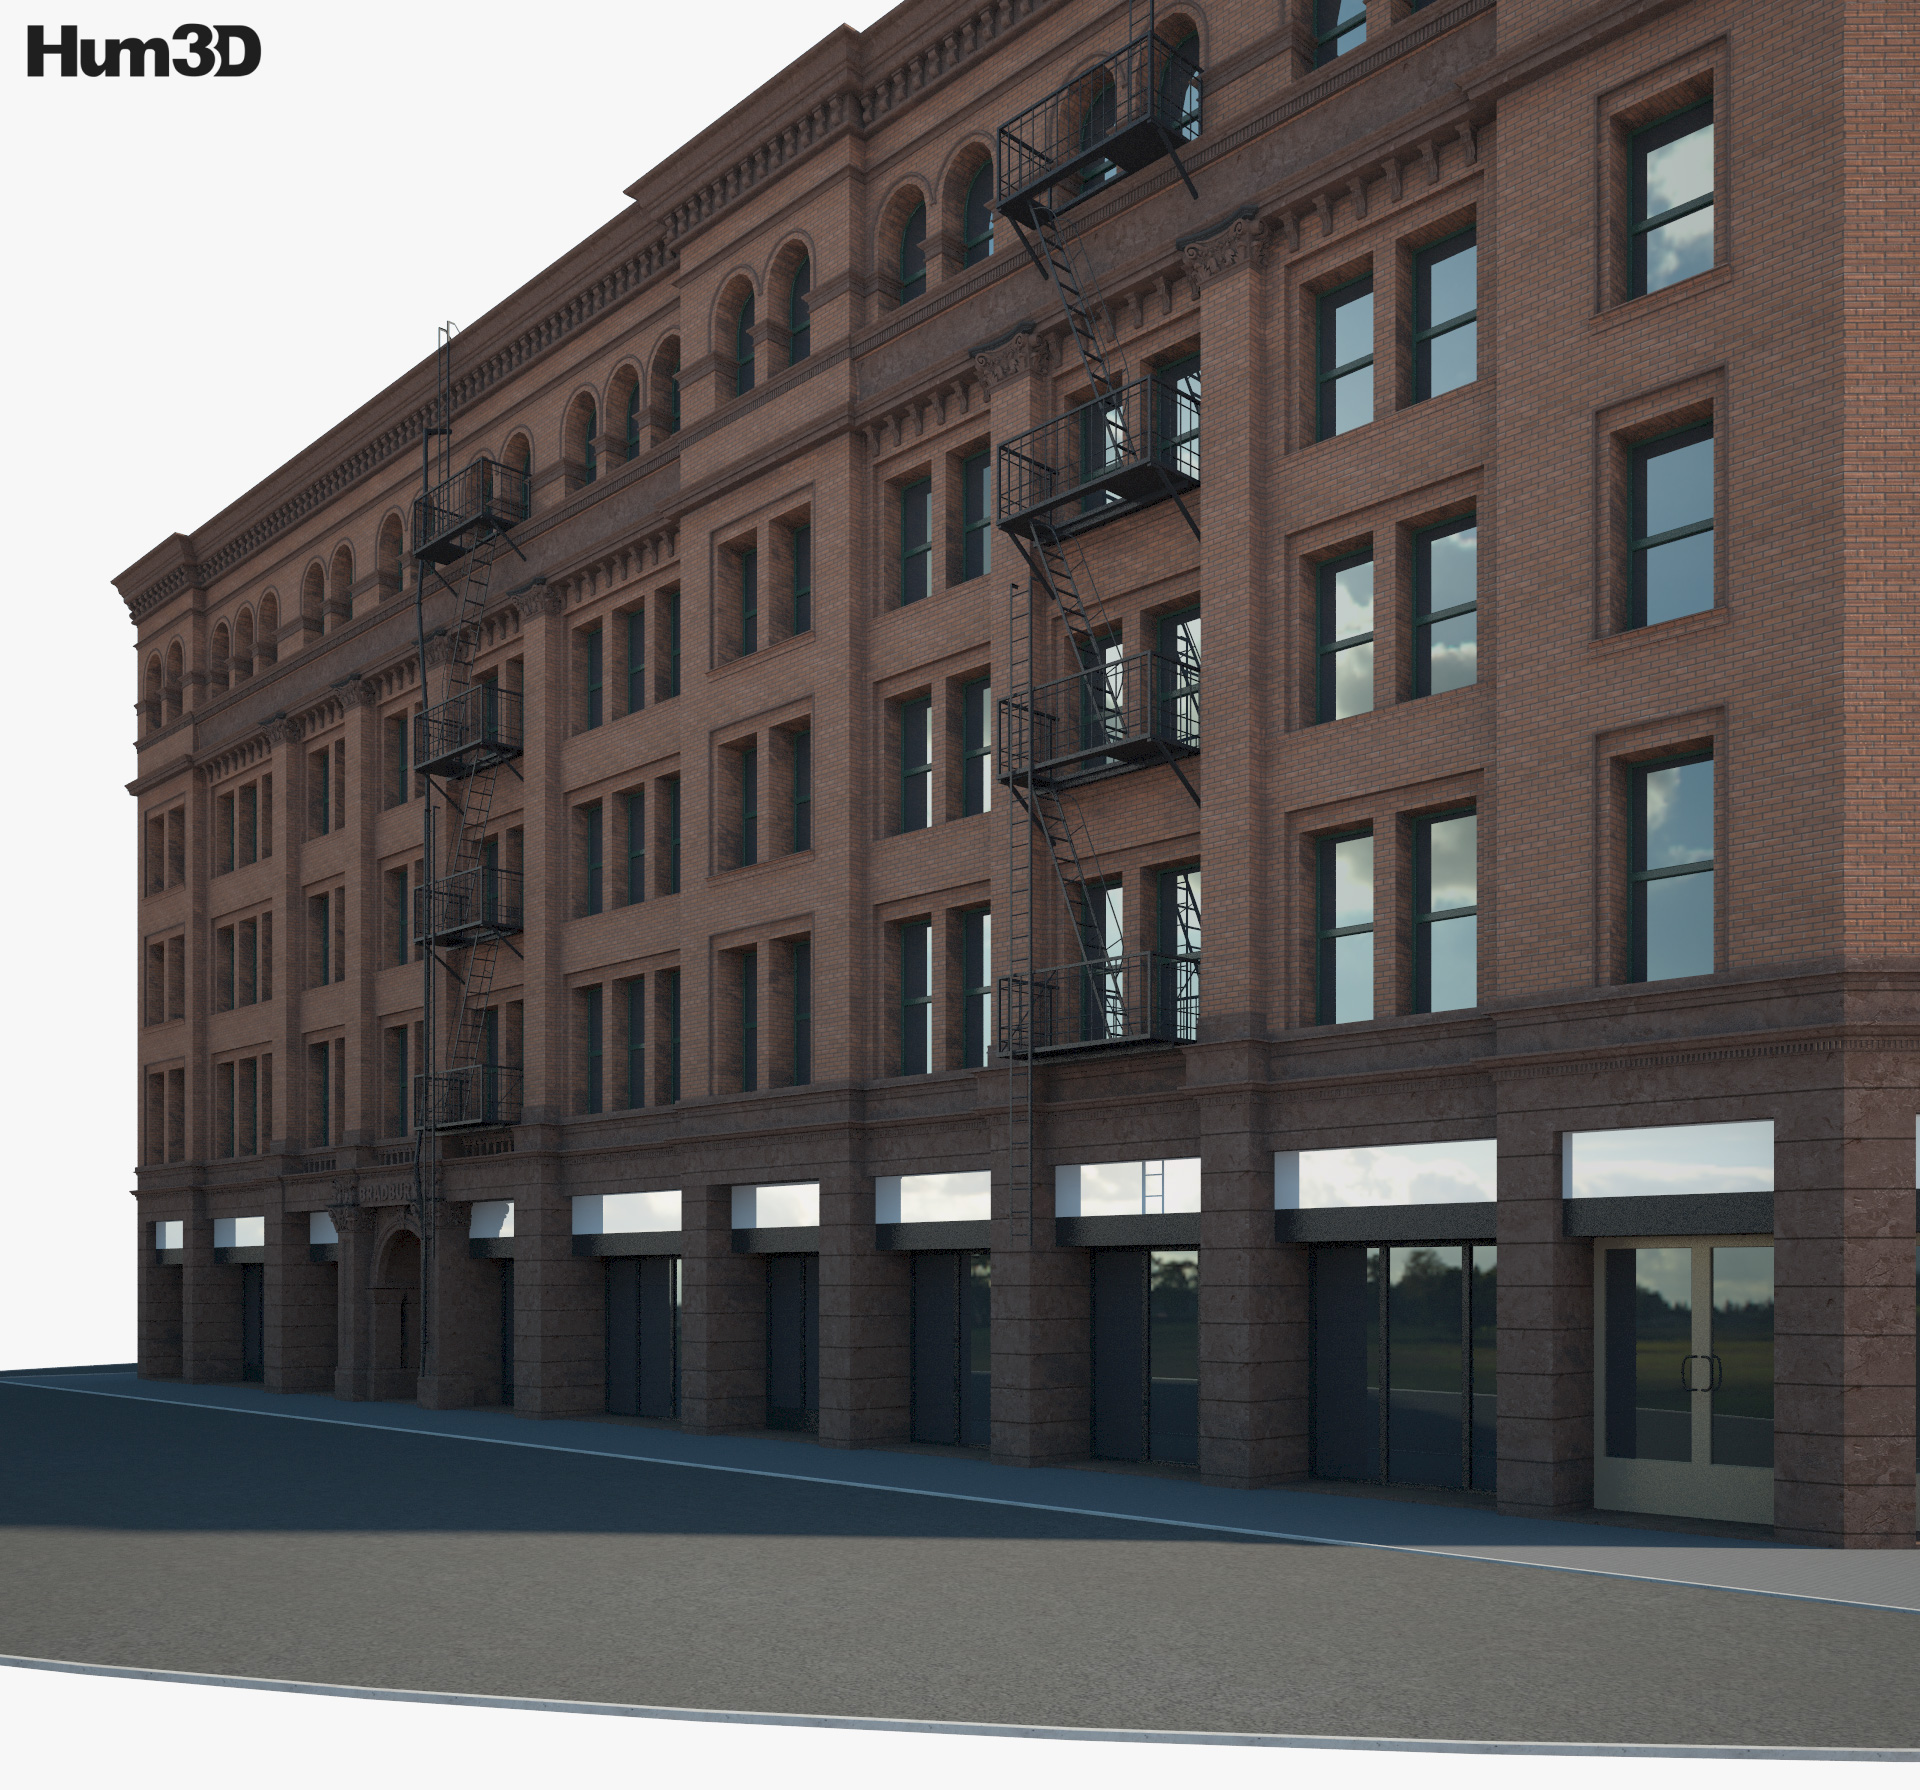 Bradbury Building 3D-Modell